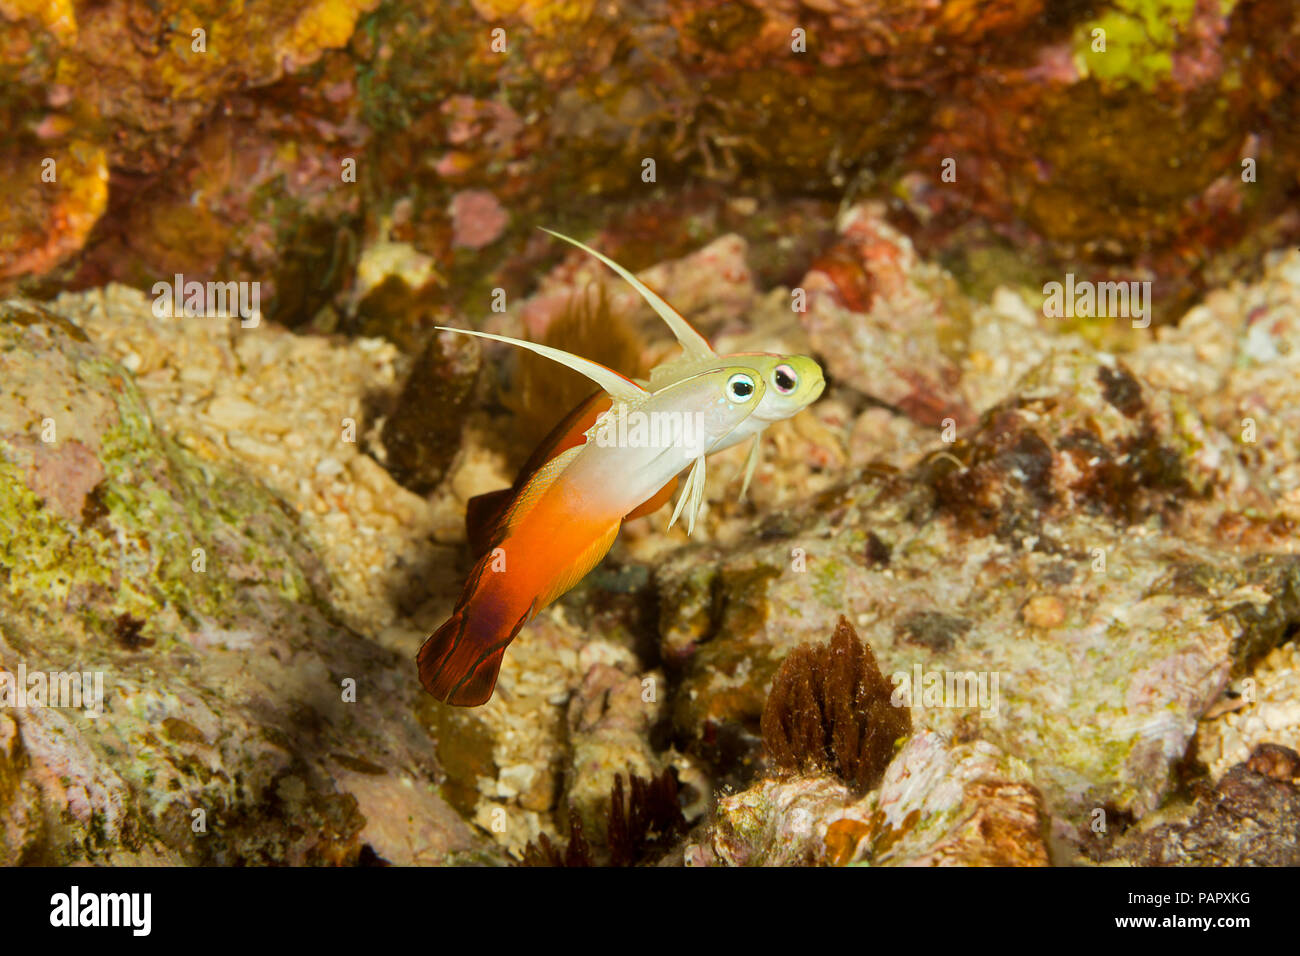 Fire Dartfish, Nemateleotris magnifica, eine gemeinsame Sicht auf die freiliegenden harter Boden des äußeren Riff Zone. Yap in Mikronesien. Stockfoto